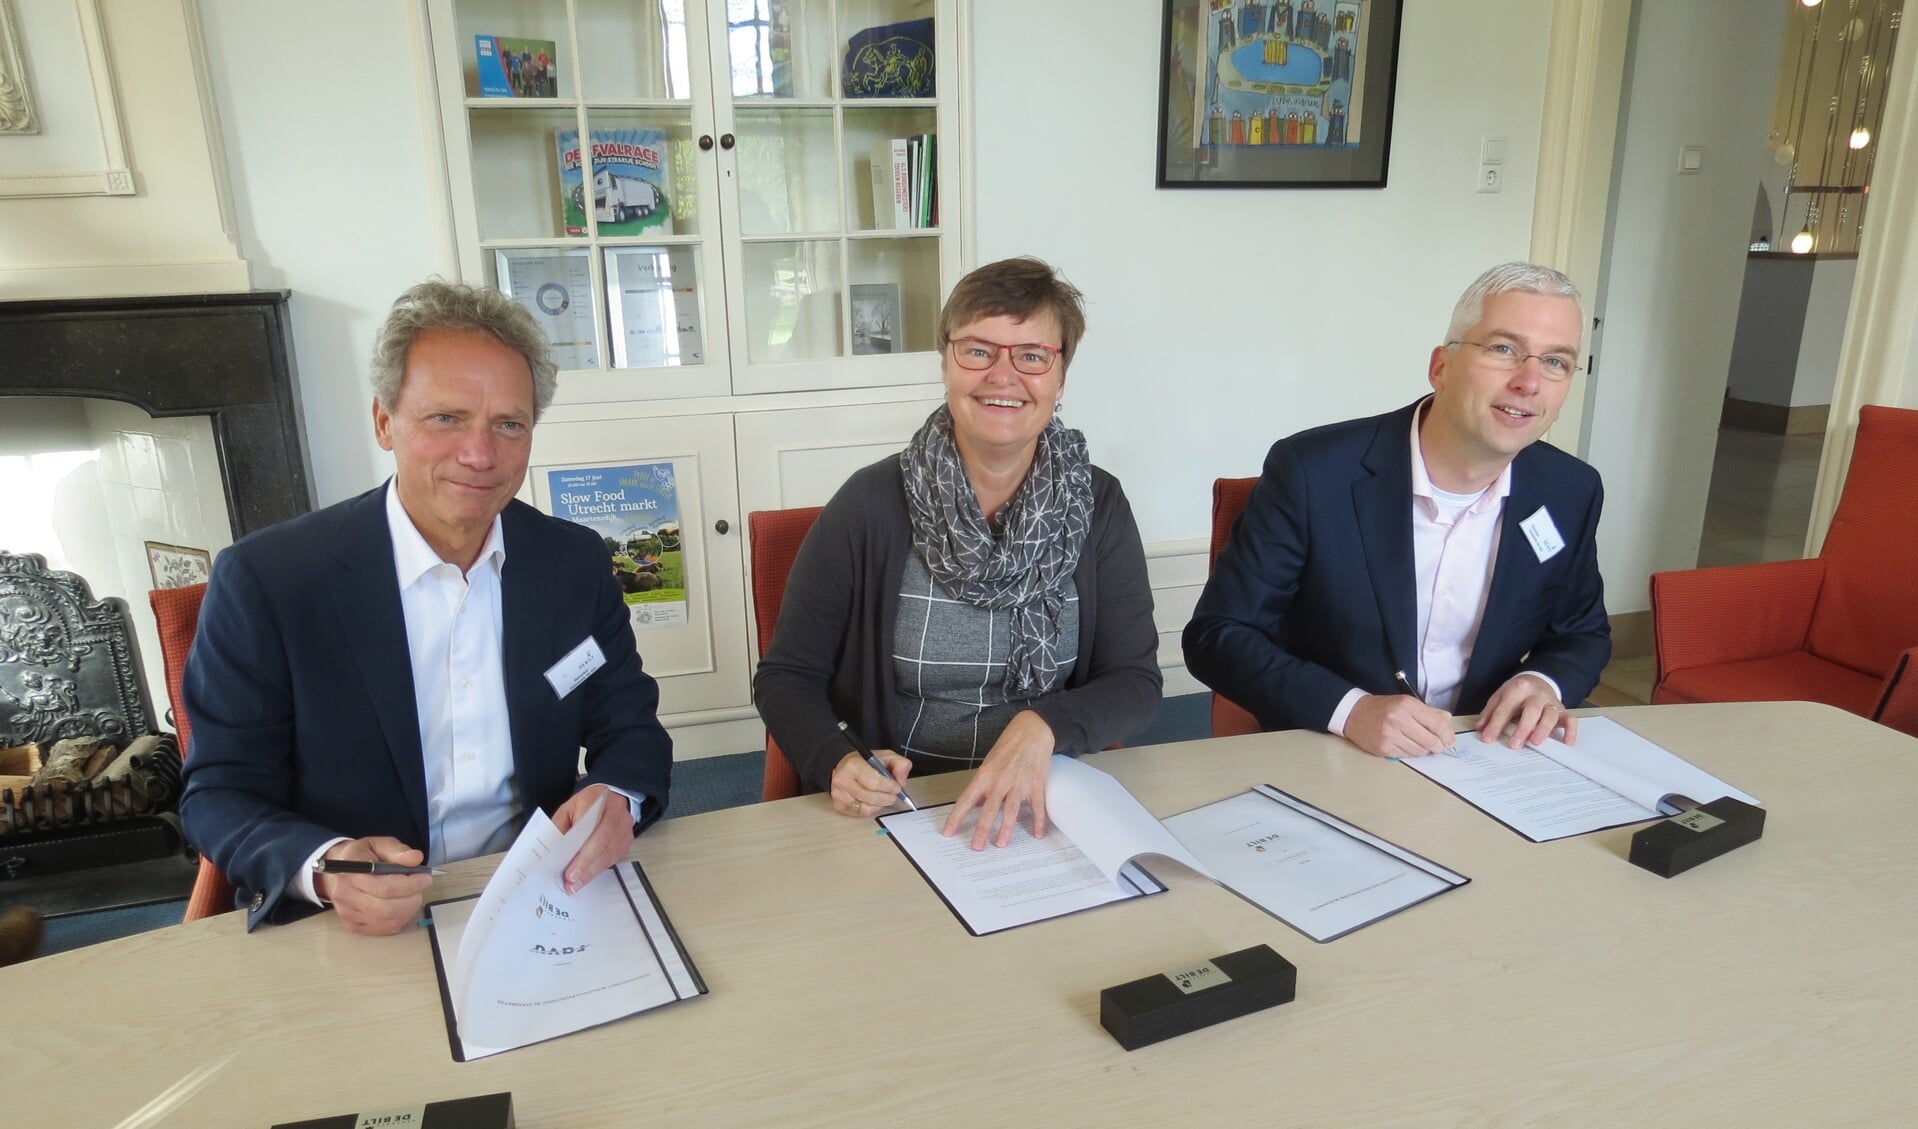 De ondertekening van de overeenkomst. V.l.n.r. Jack Versluis, Anne Brommersma en Jan Maurits De Beij. 